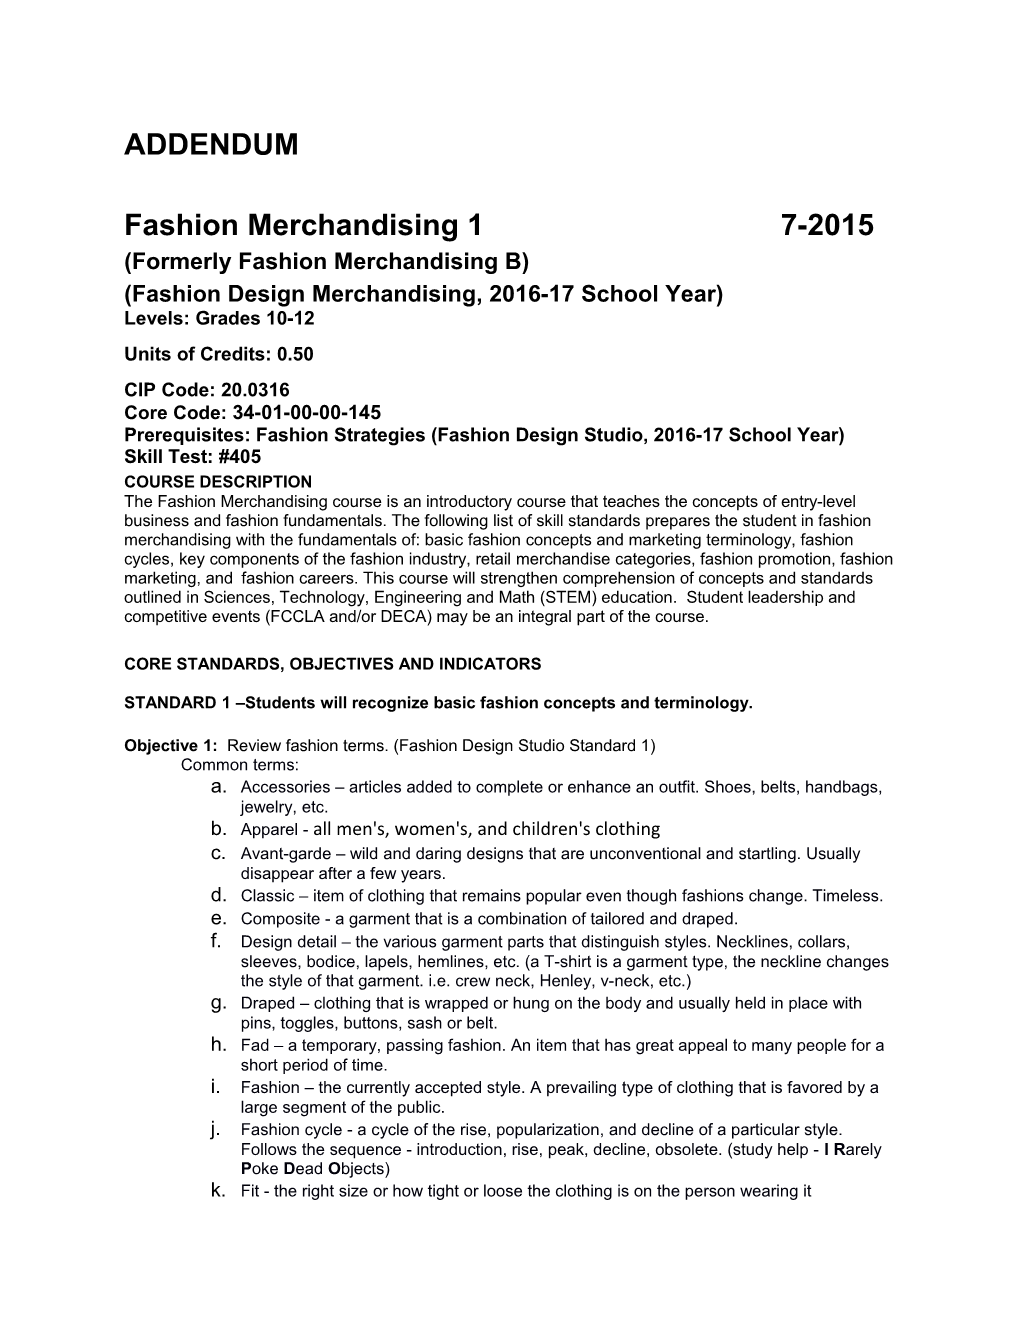 Fashion Design Merchandising,2016-17 School Year